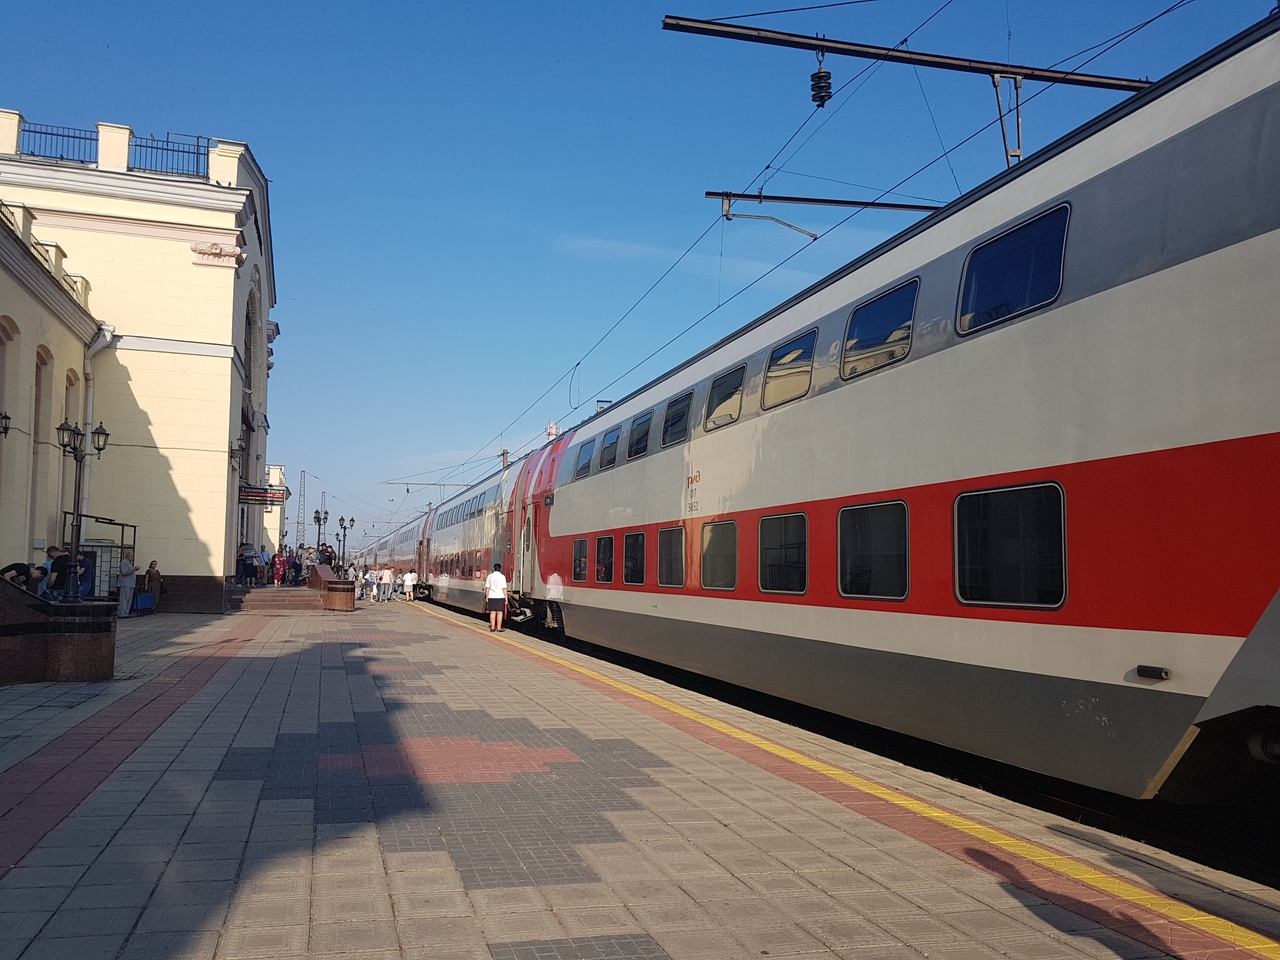 двухэтажный поезд воронеж москва купе